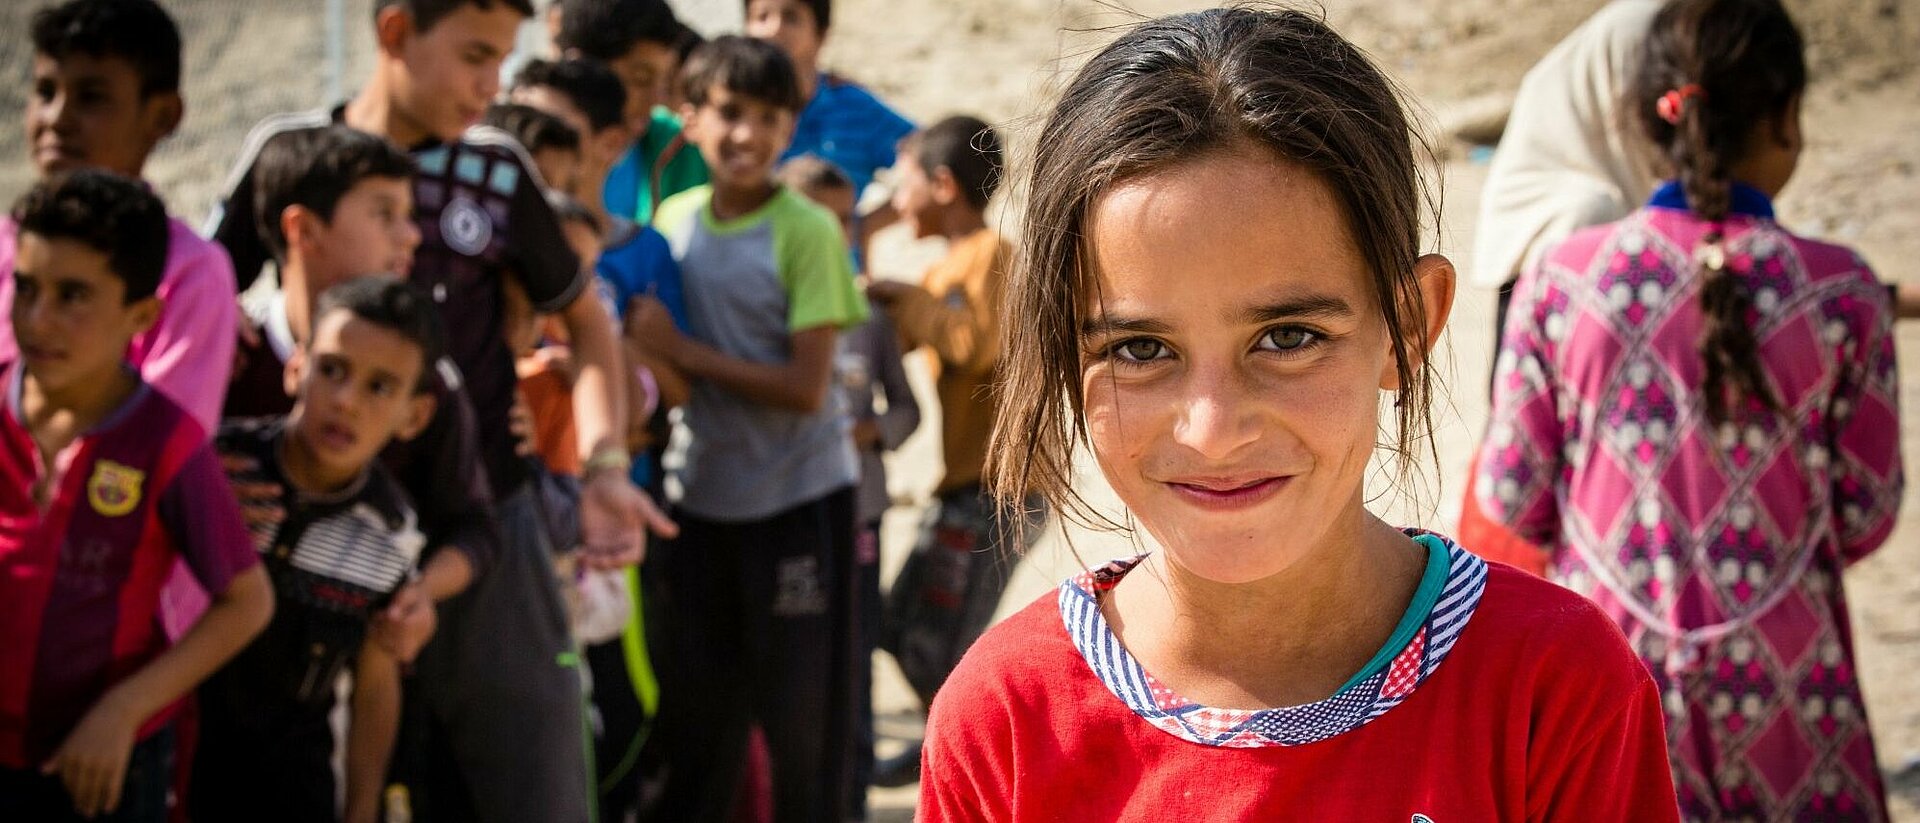 Mädchen in Flüchtlingscamp im Irak 